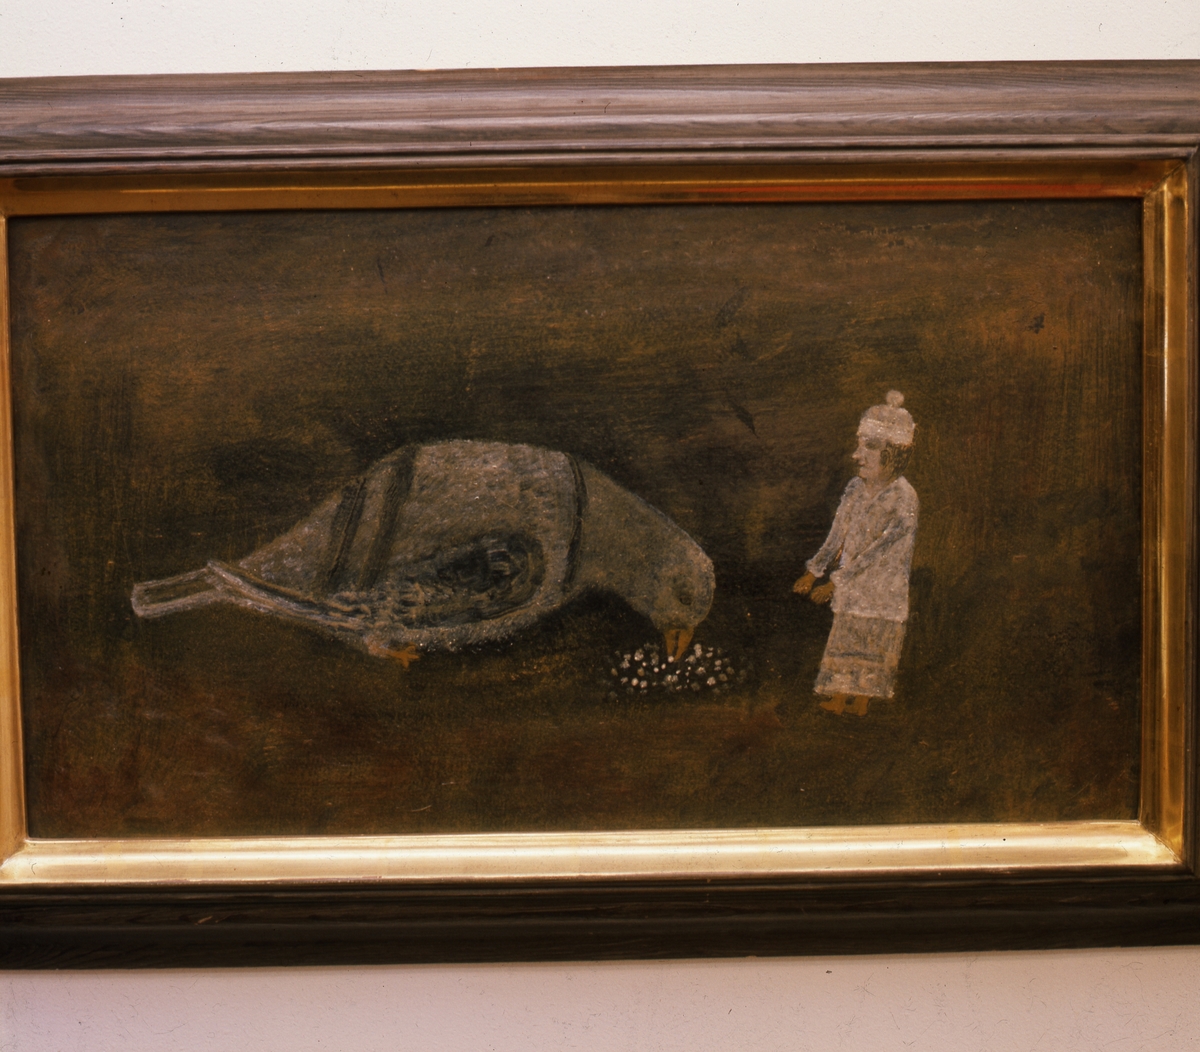 Målning av "Lim-Johan", Johan Erik Olsson född 1865 död 1944. Han var självlärd konstnär och naivist, från Kyan i Hälsingland. Här ett motiv där en kvinna lägger mat på marken framför en stor duva.